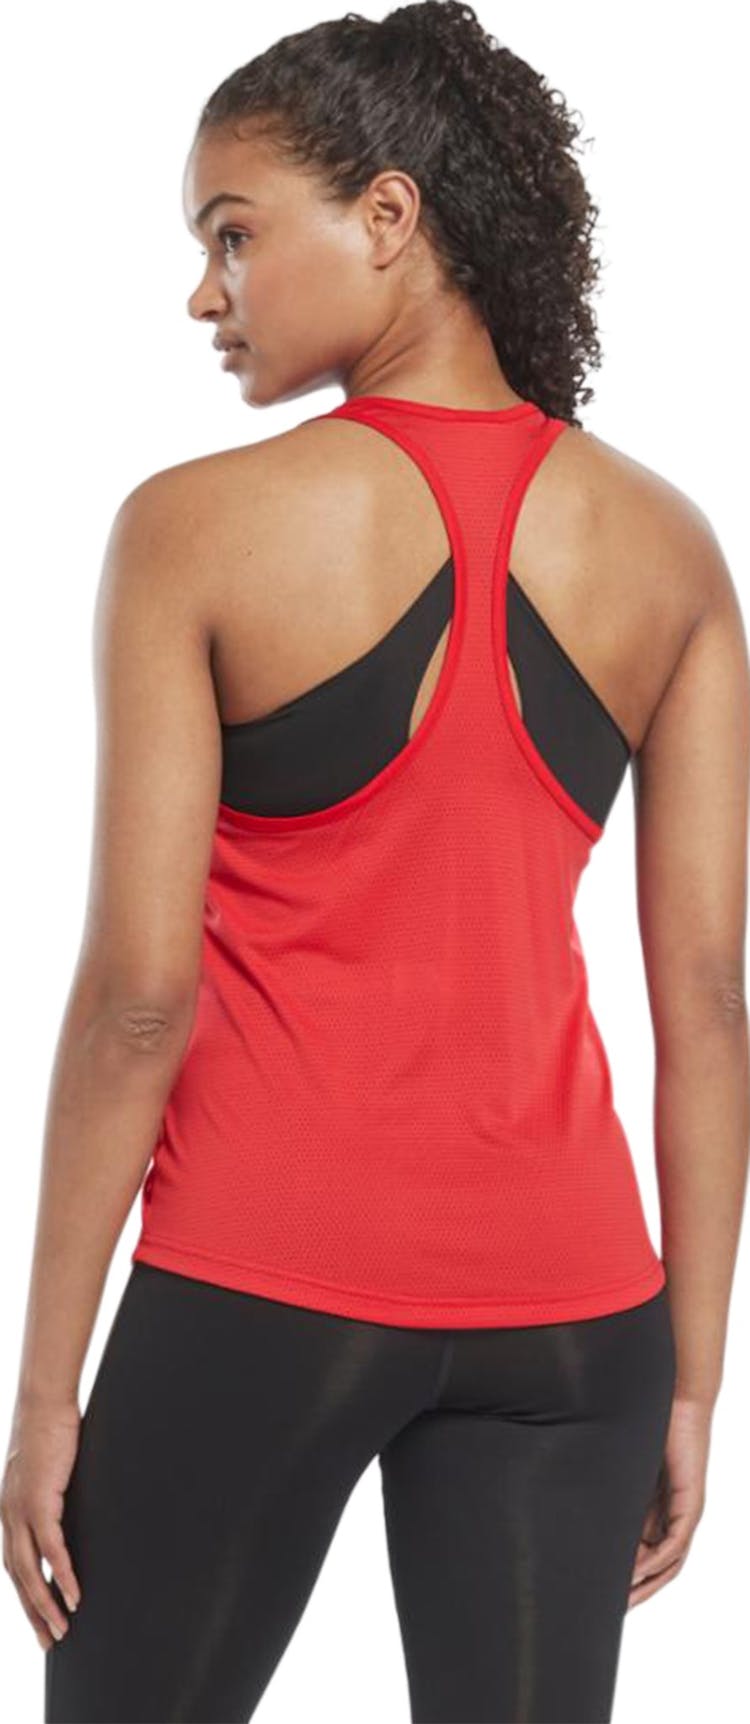 Numéro de l'image de la galerie de produits 4 pour le produit Camisole avec dos en filet Workout Ready - Femme